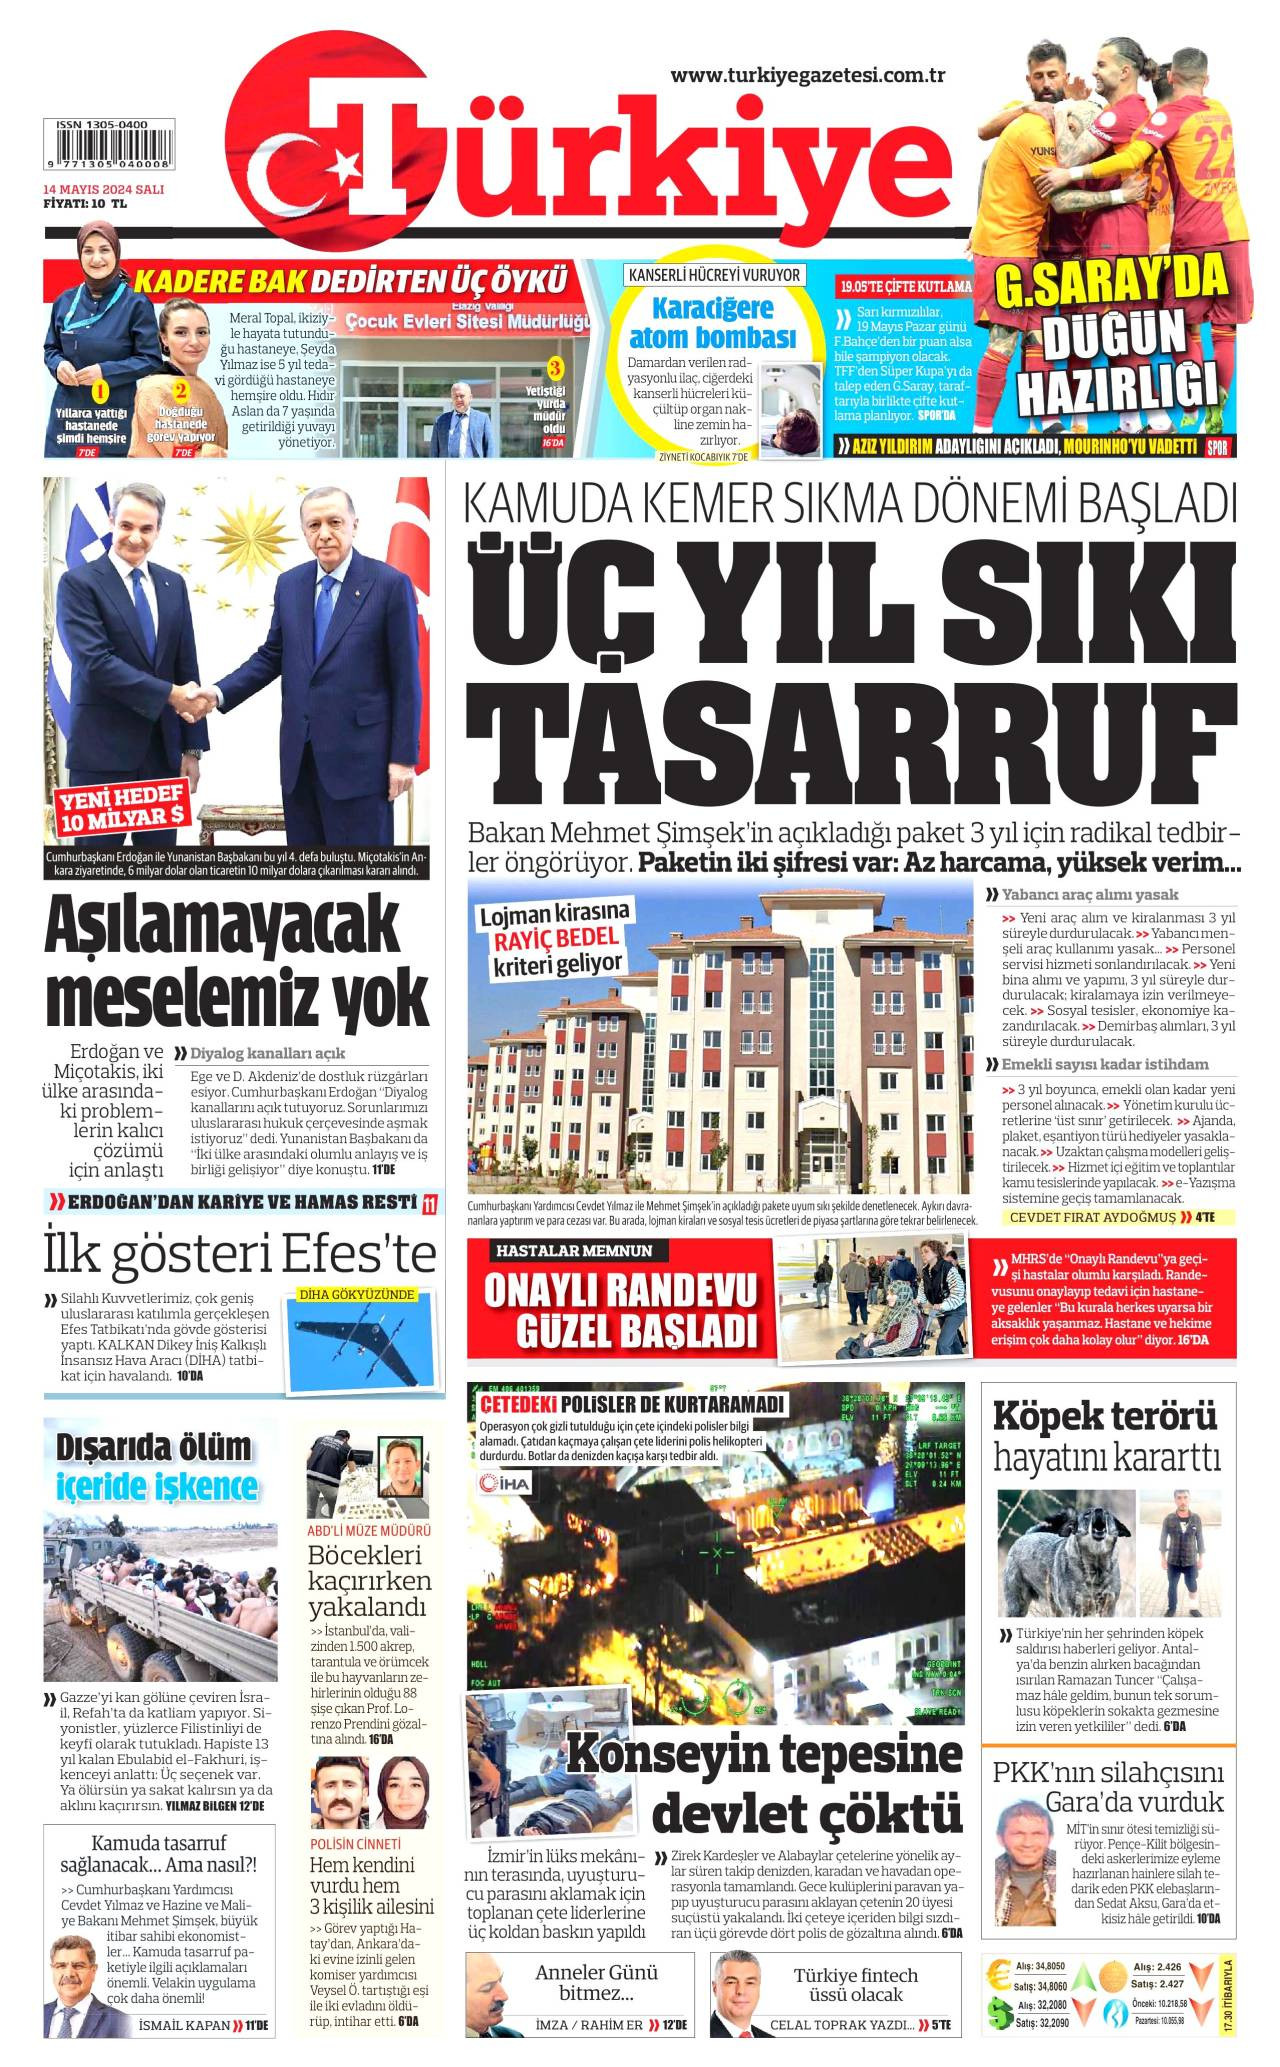  turkiye Gazetesi